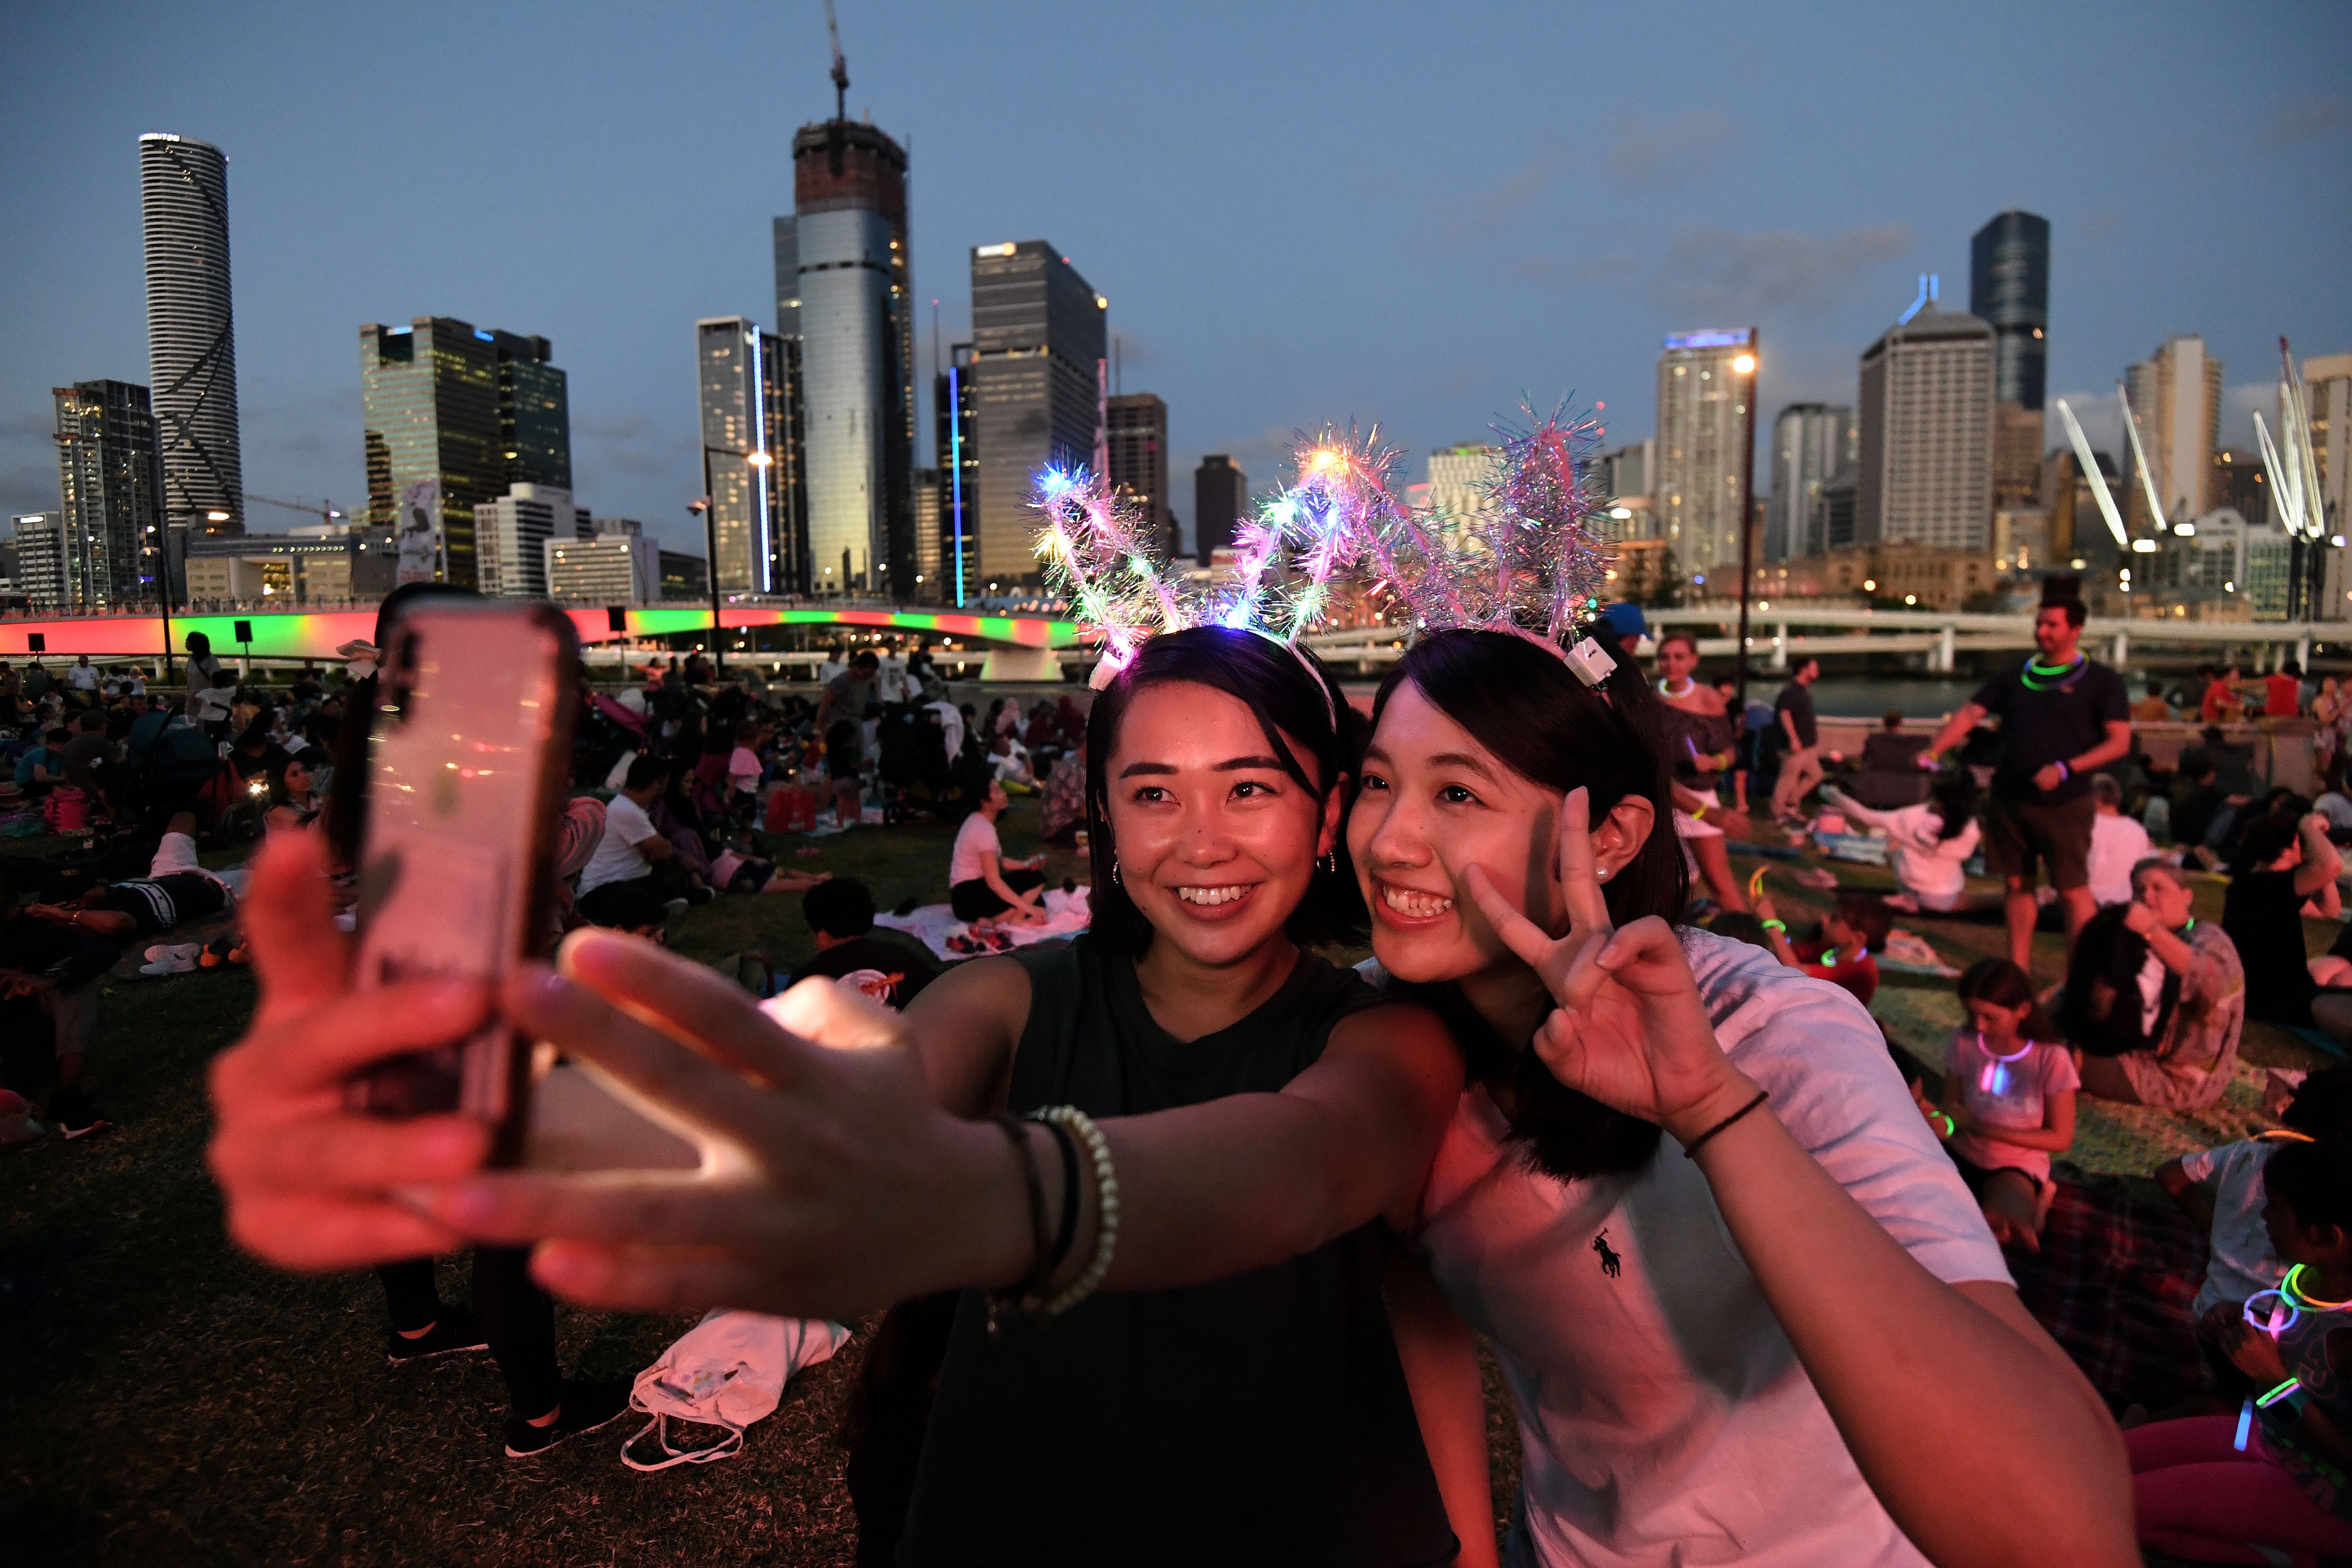 Dos mujeres esperan el show de fuegos artificiales frente a la bahía de Brisbane en Australia